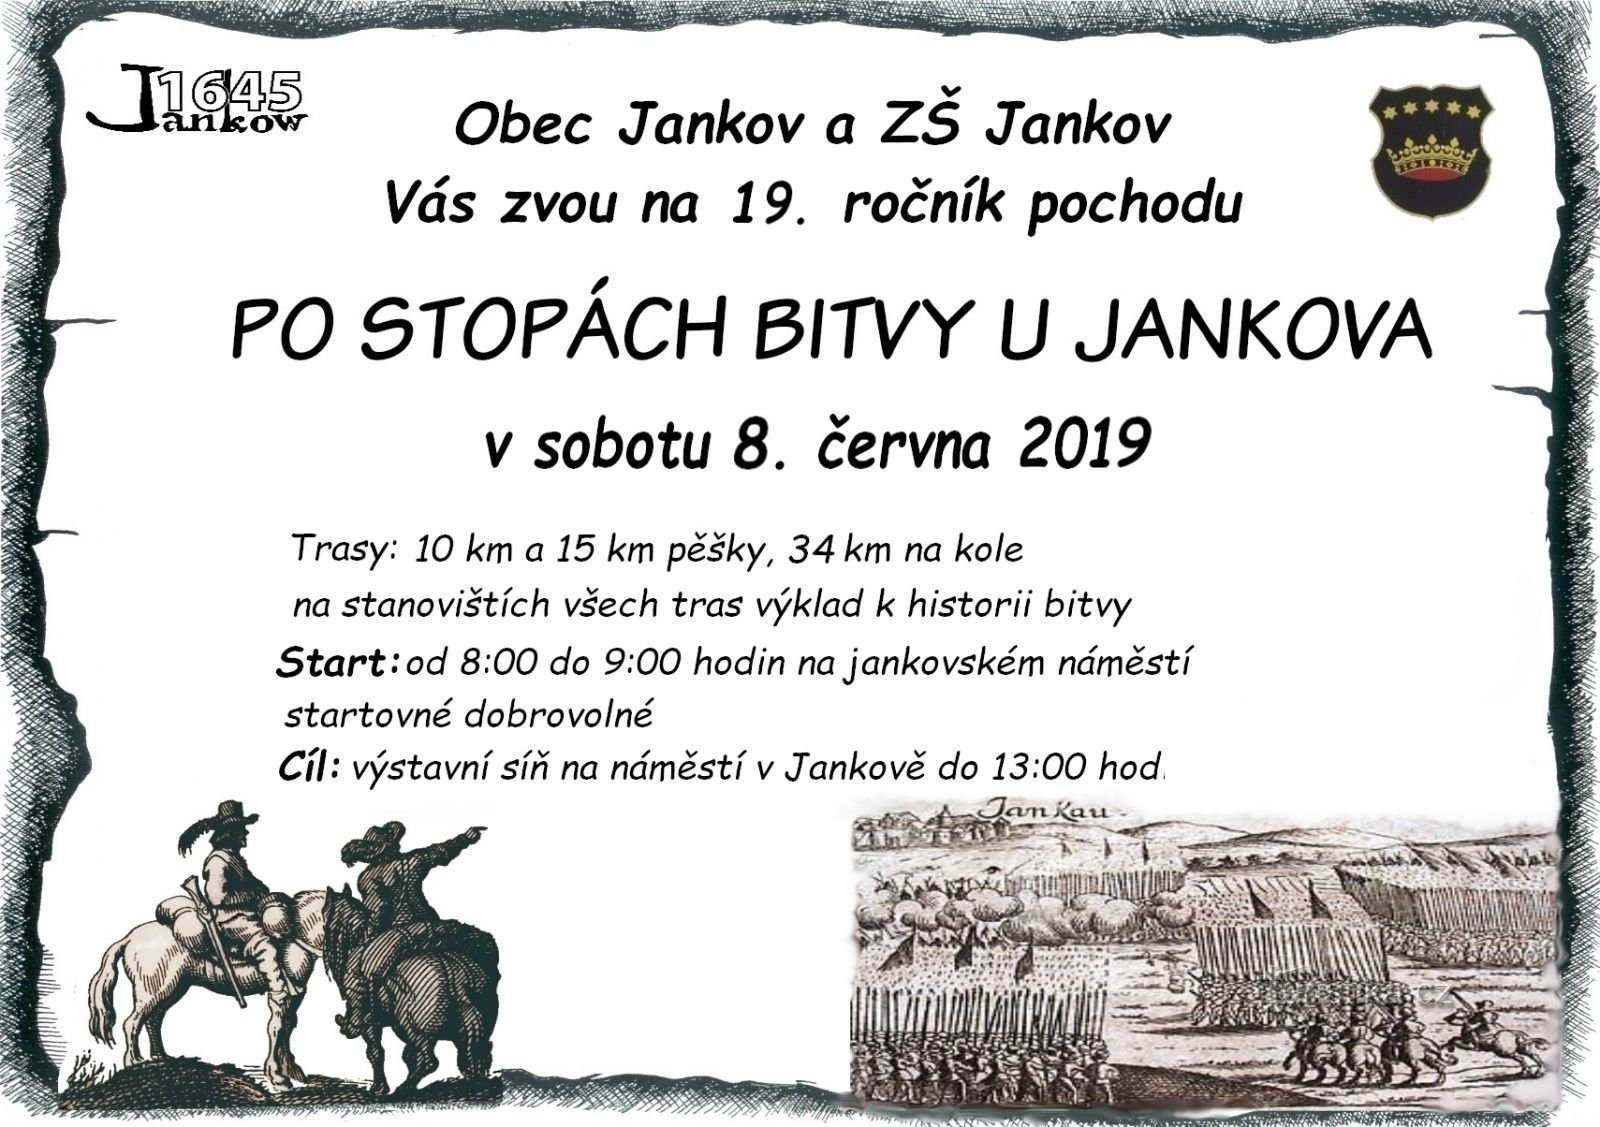 Op mars De sporen van de strijd volgen bij Jankovo ​​​​en vervolgens op de reis naar de prehistorie